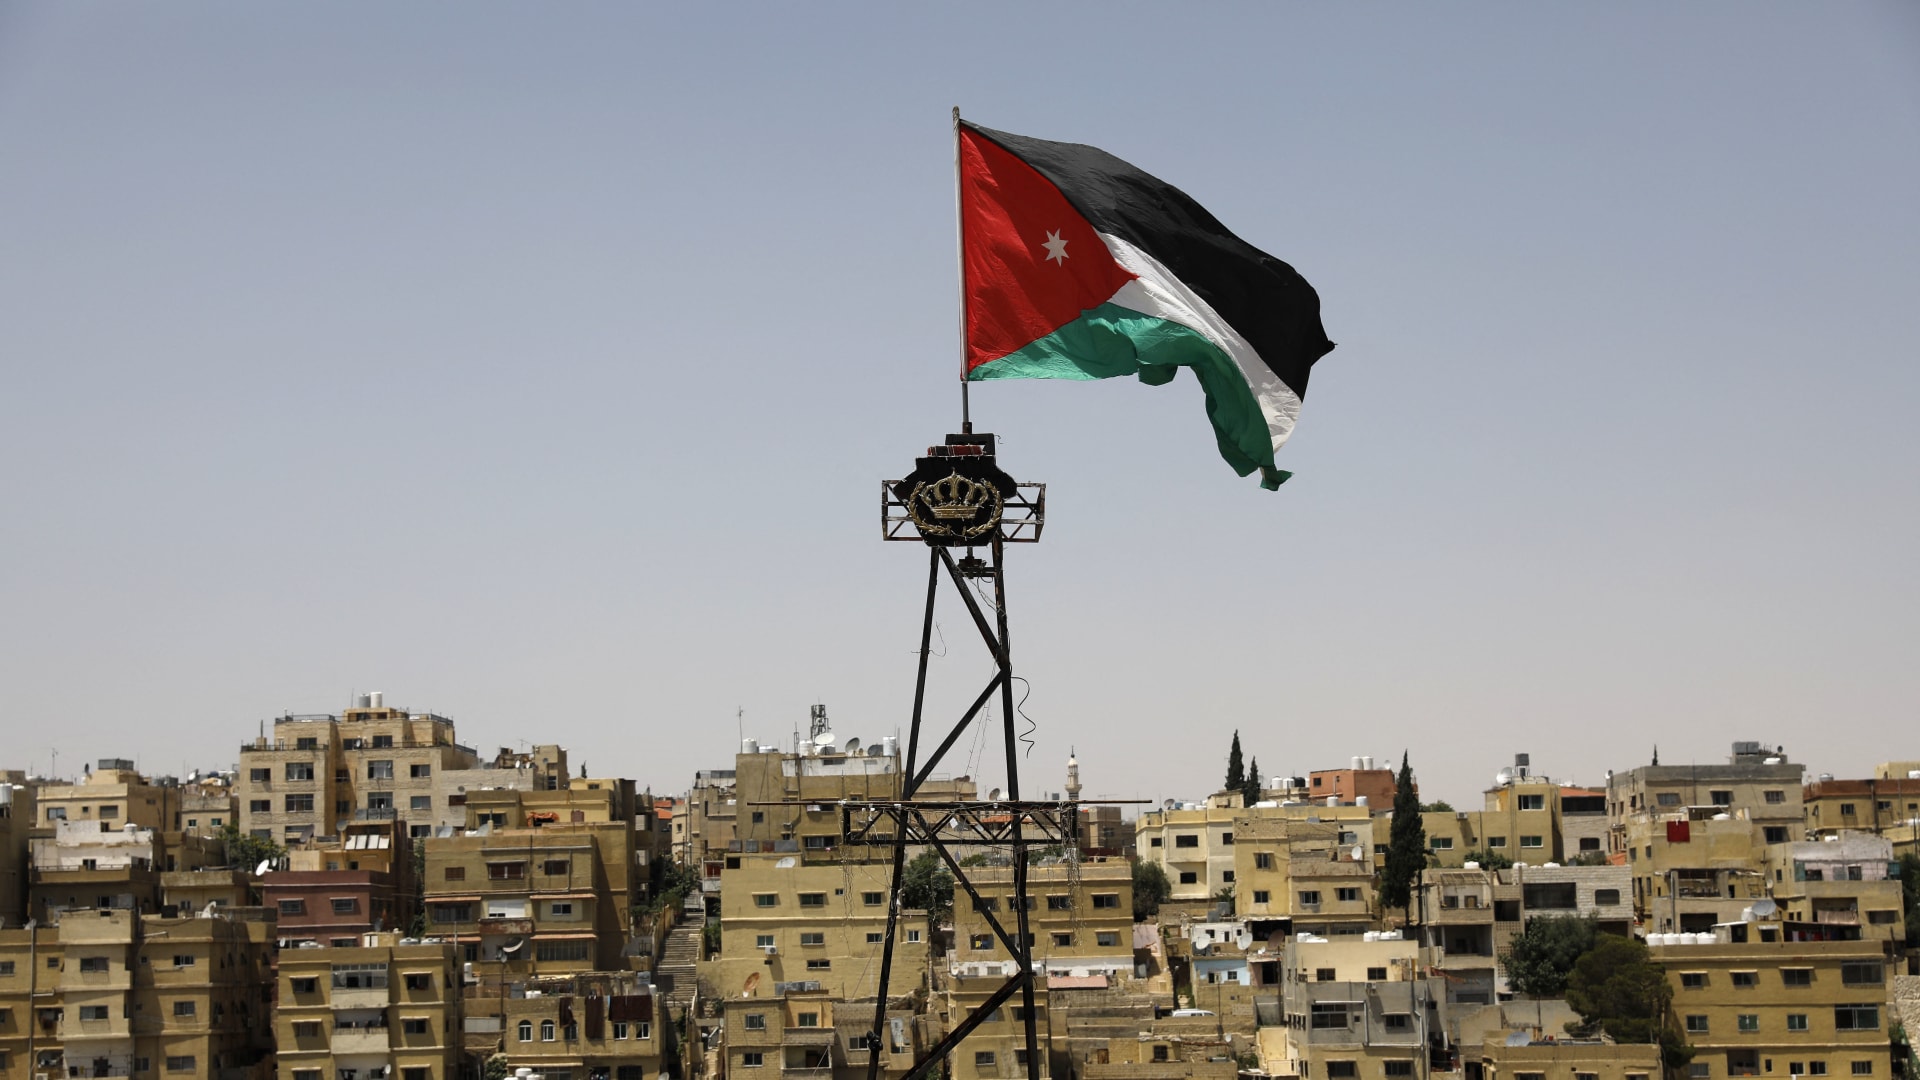 عاجل  الأردن: الحكومة الإسرائيلية تتصرف مرة أخرى بازدراء للقانون الدولي